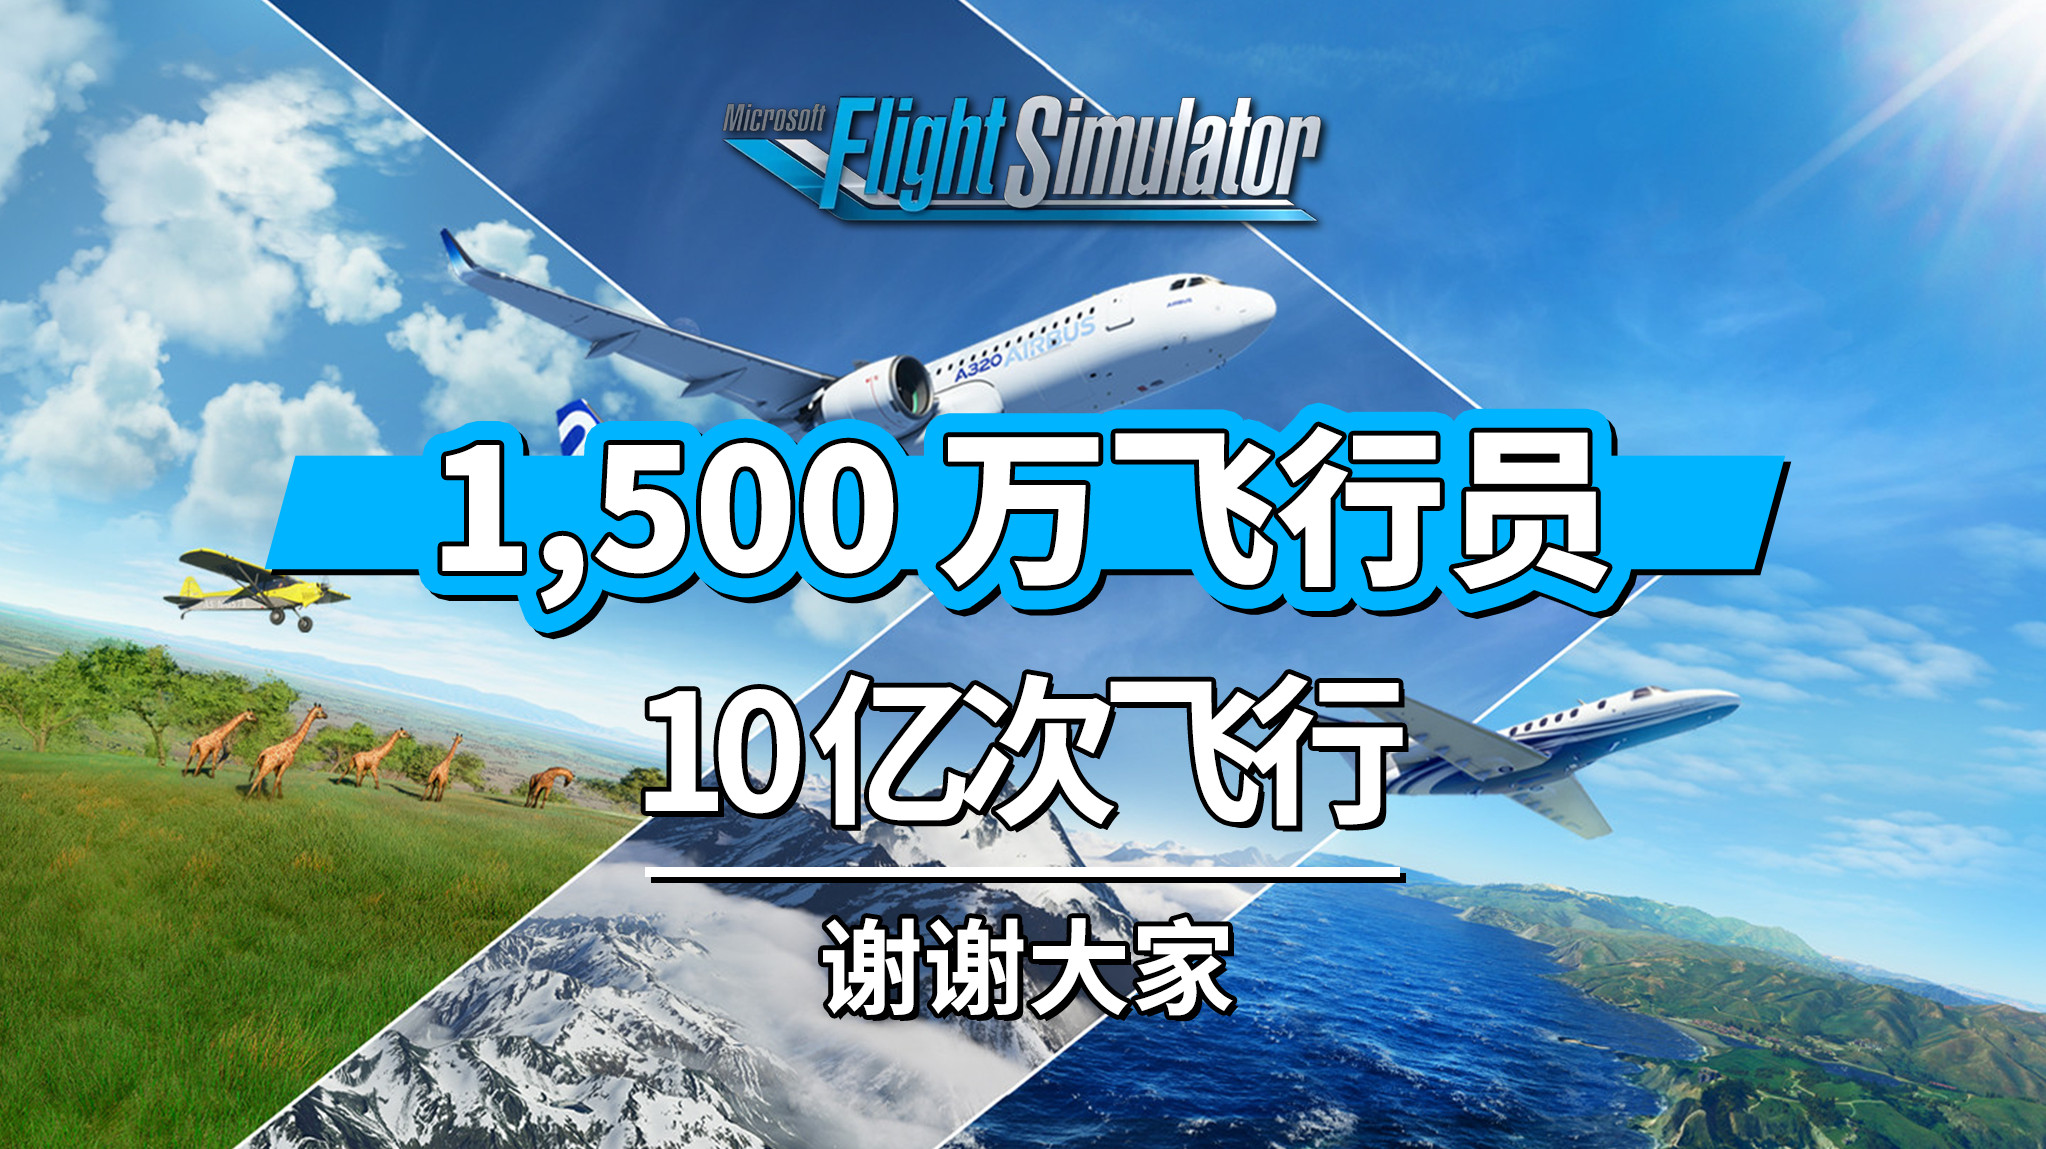 《微软飞行模拟》游戏玩家超过1500万